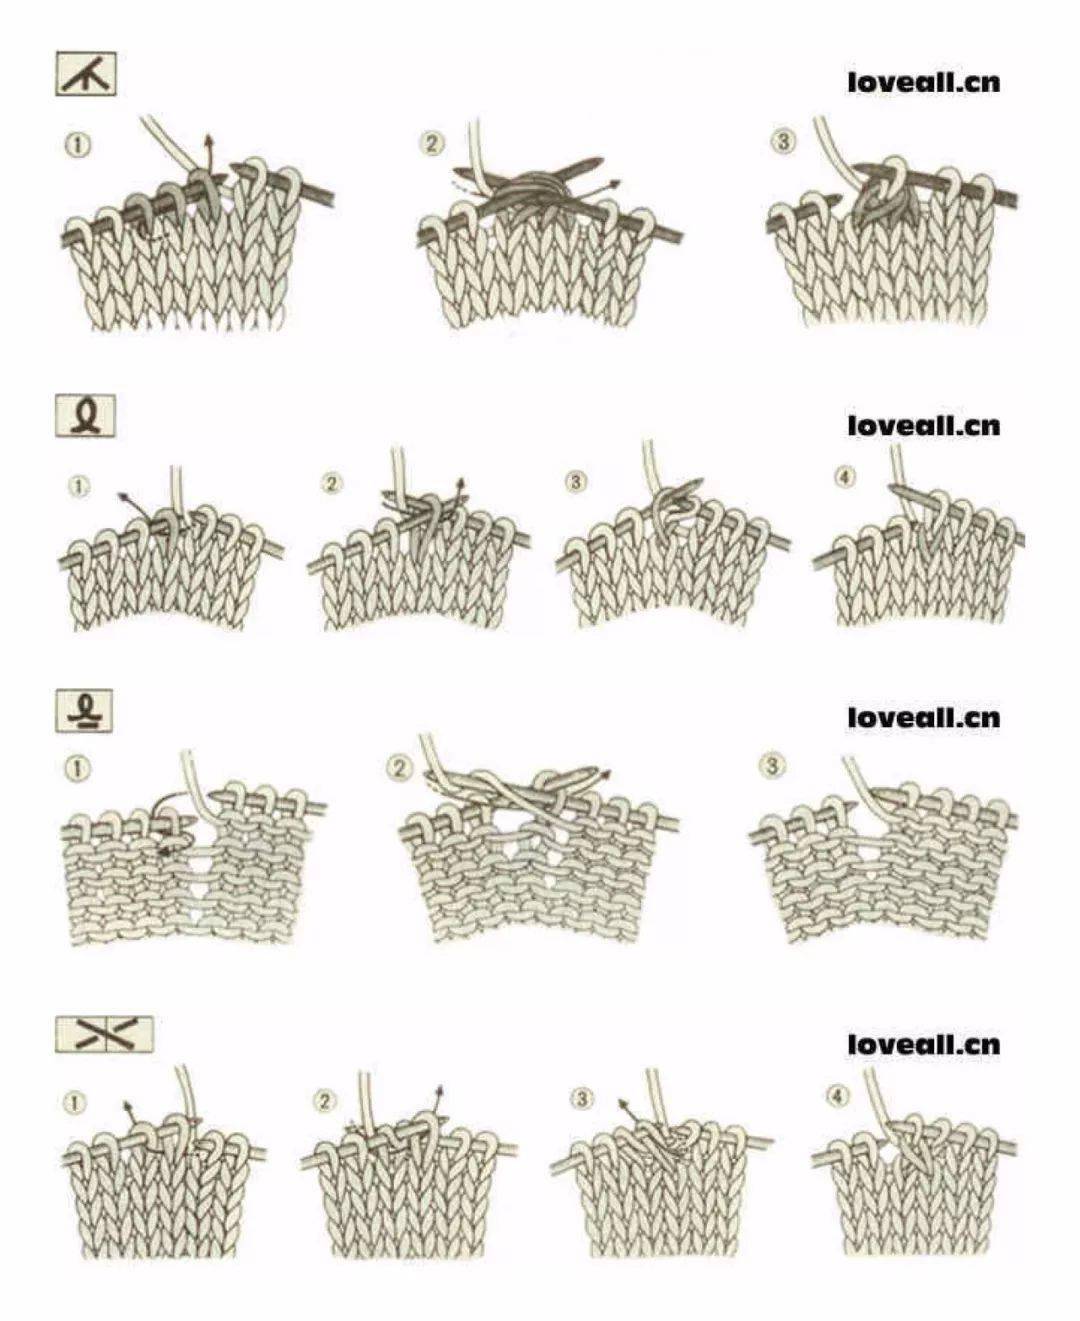 毛衣500种编织图解方法图片